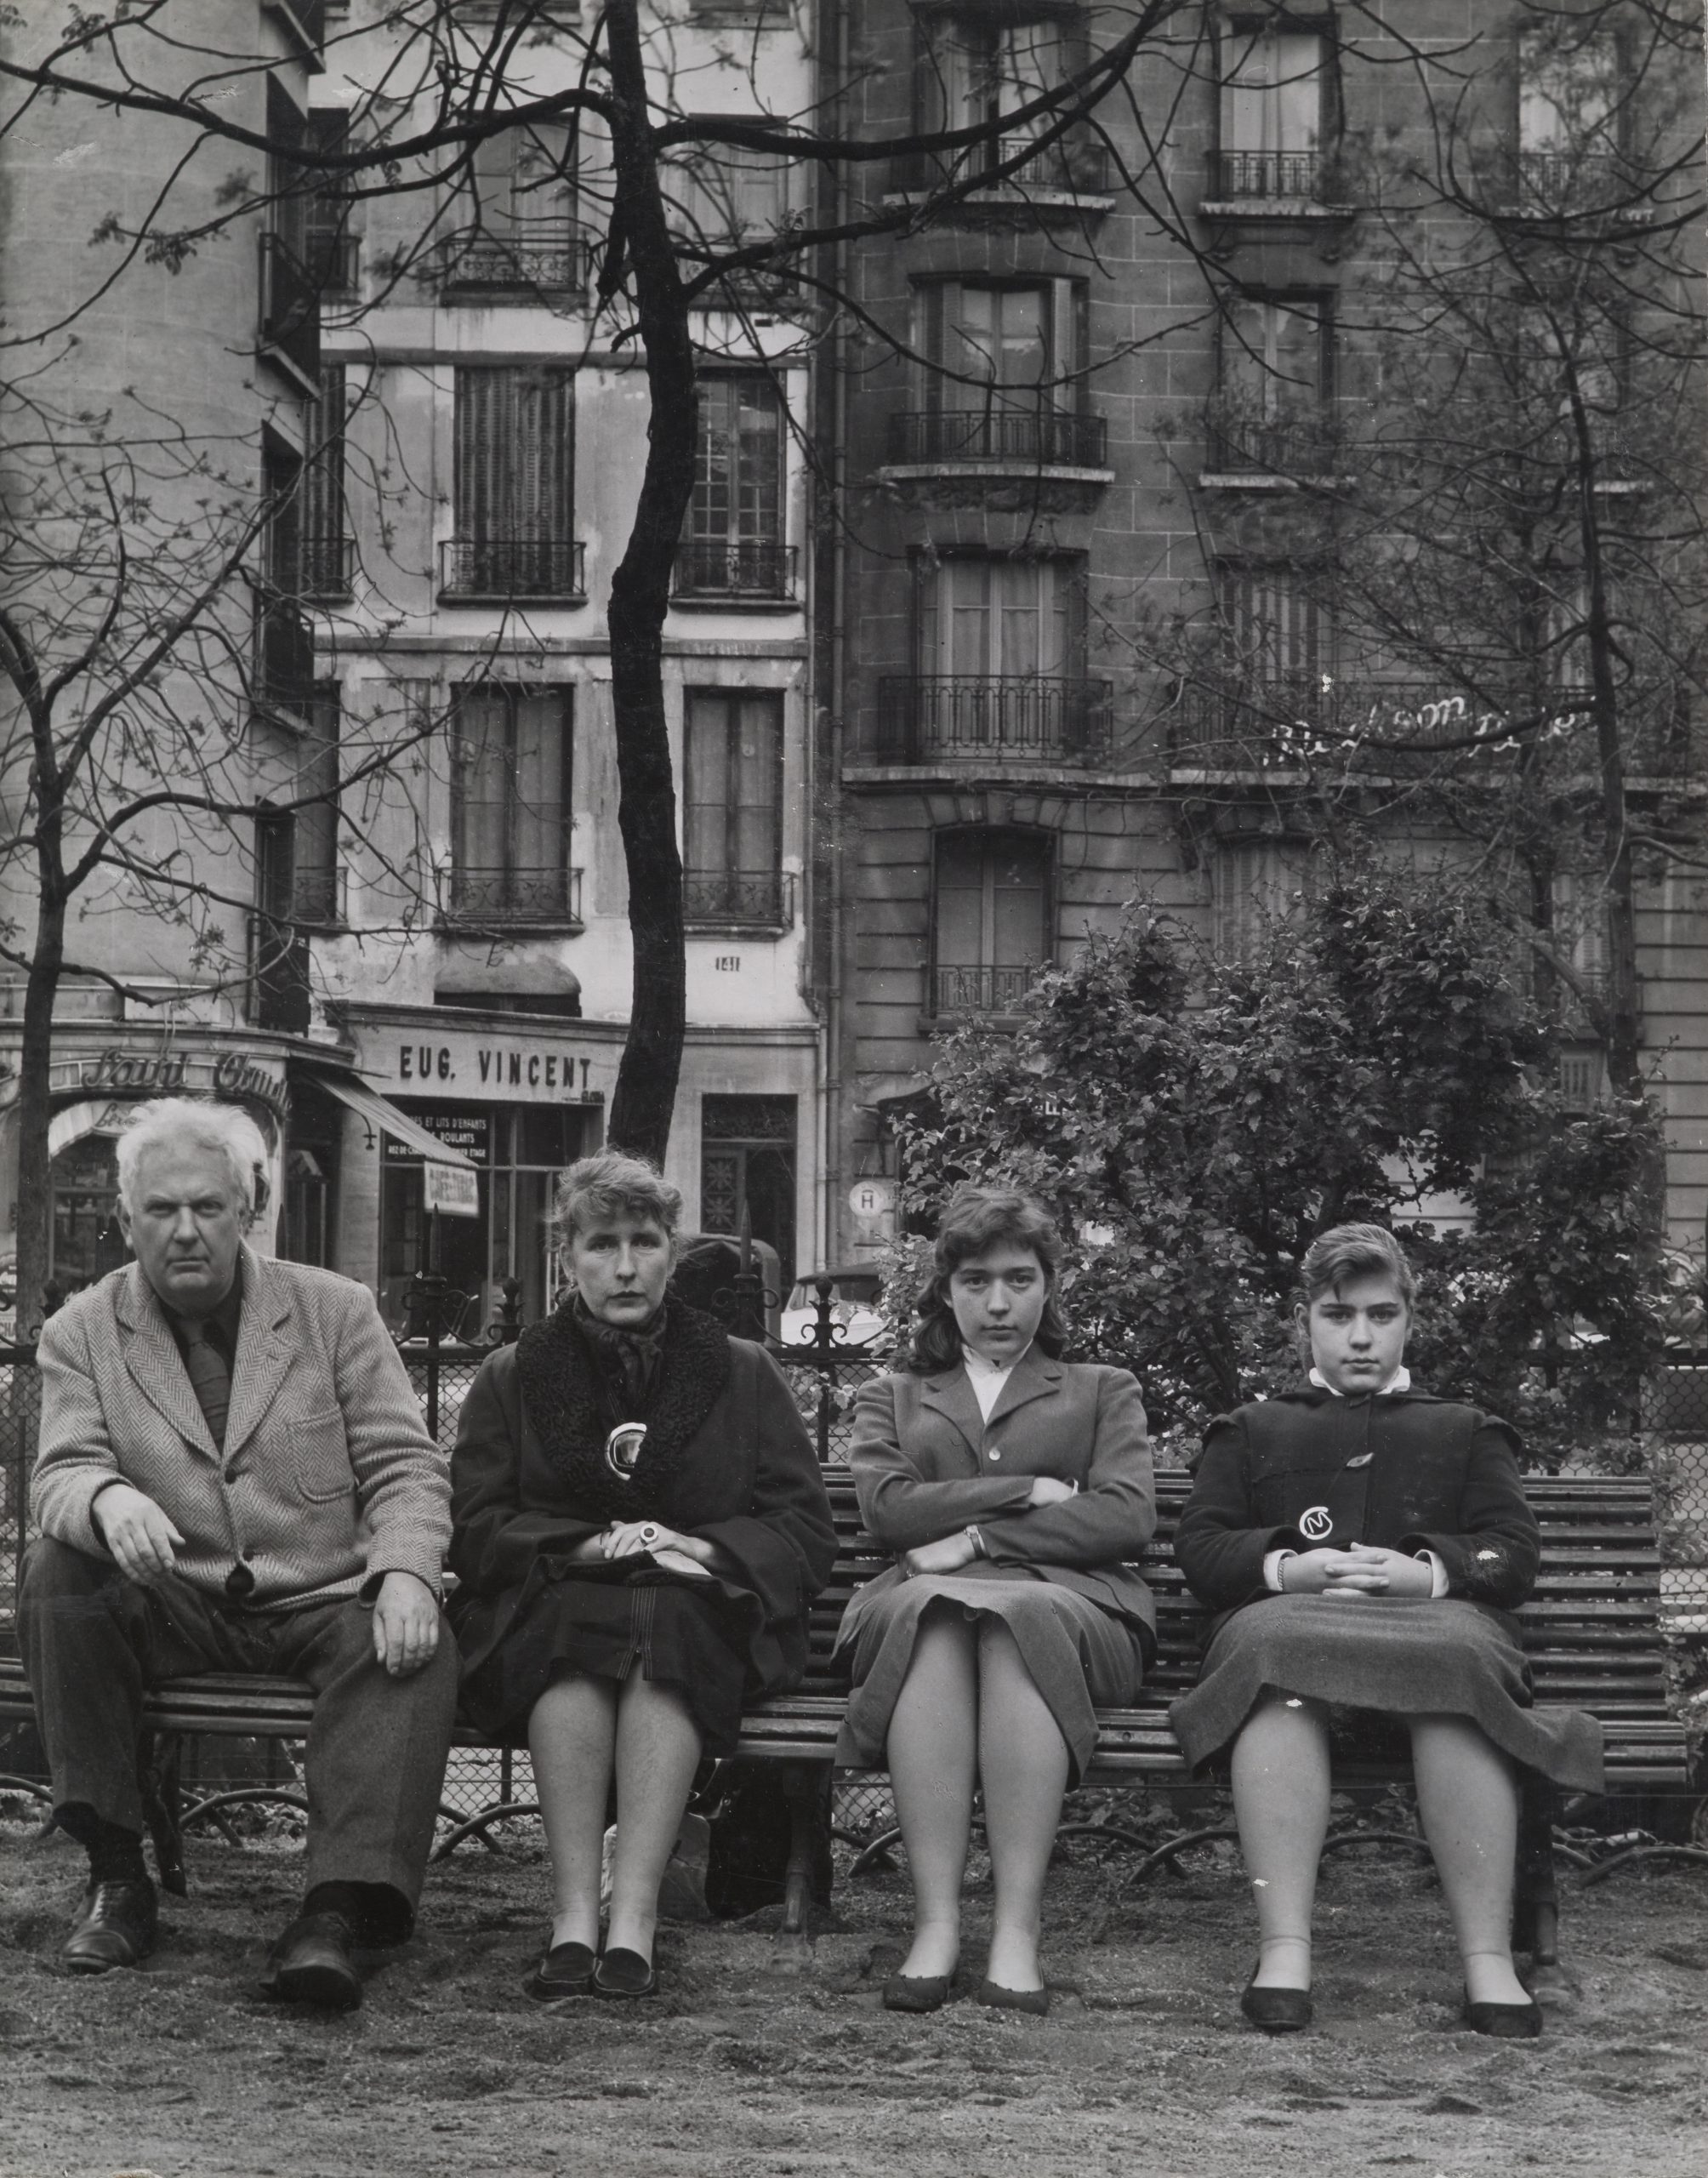 La famille Calder posant sur un banc dans un square parisien, 1954, Paris